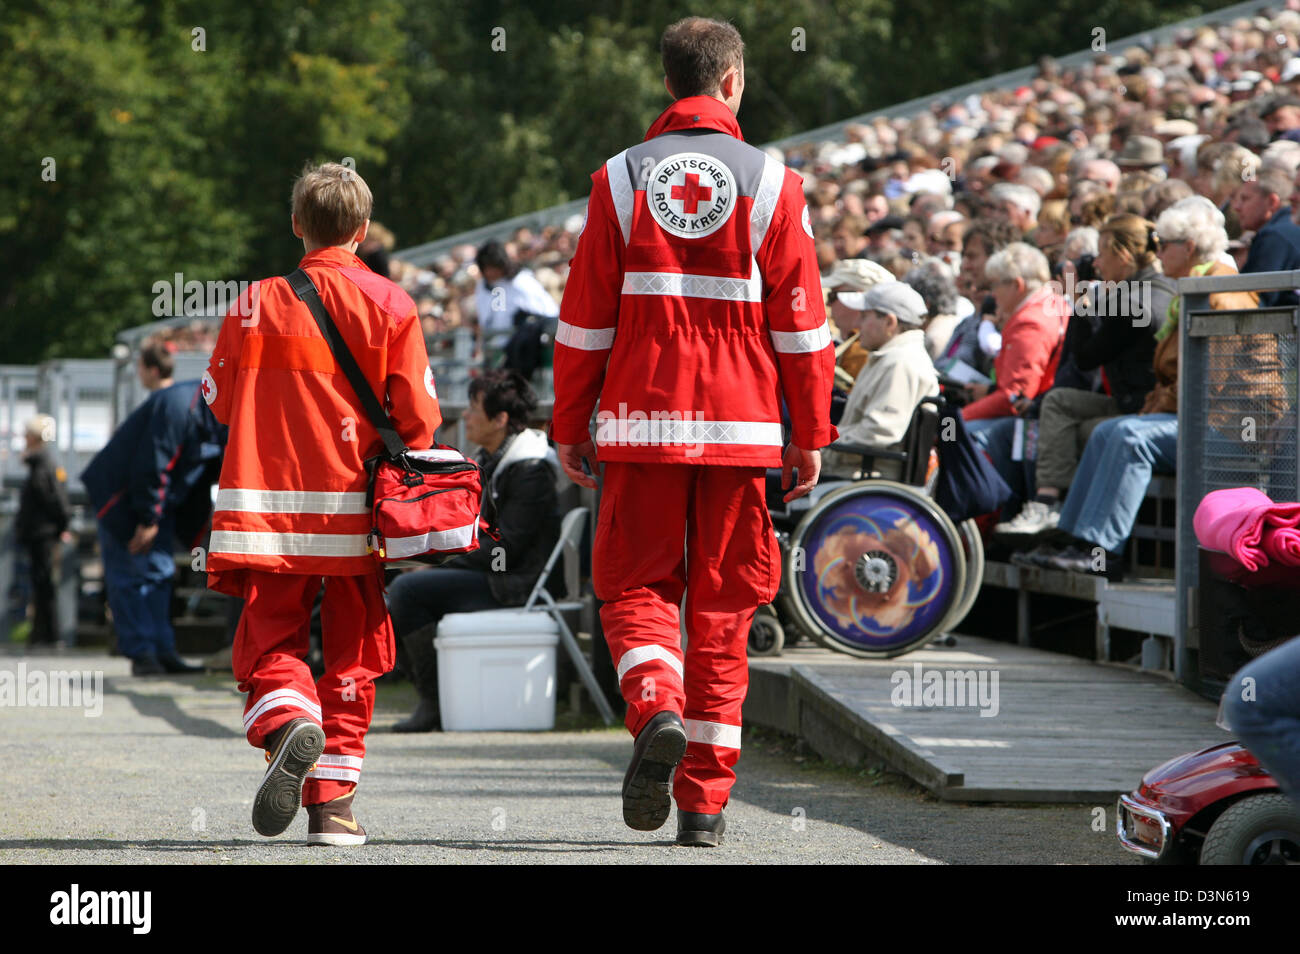 Moritzburg, Deutschland, Mitglieder des Deutschen Roten Kreuzes bei einer Veranstaltung Stockfoto